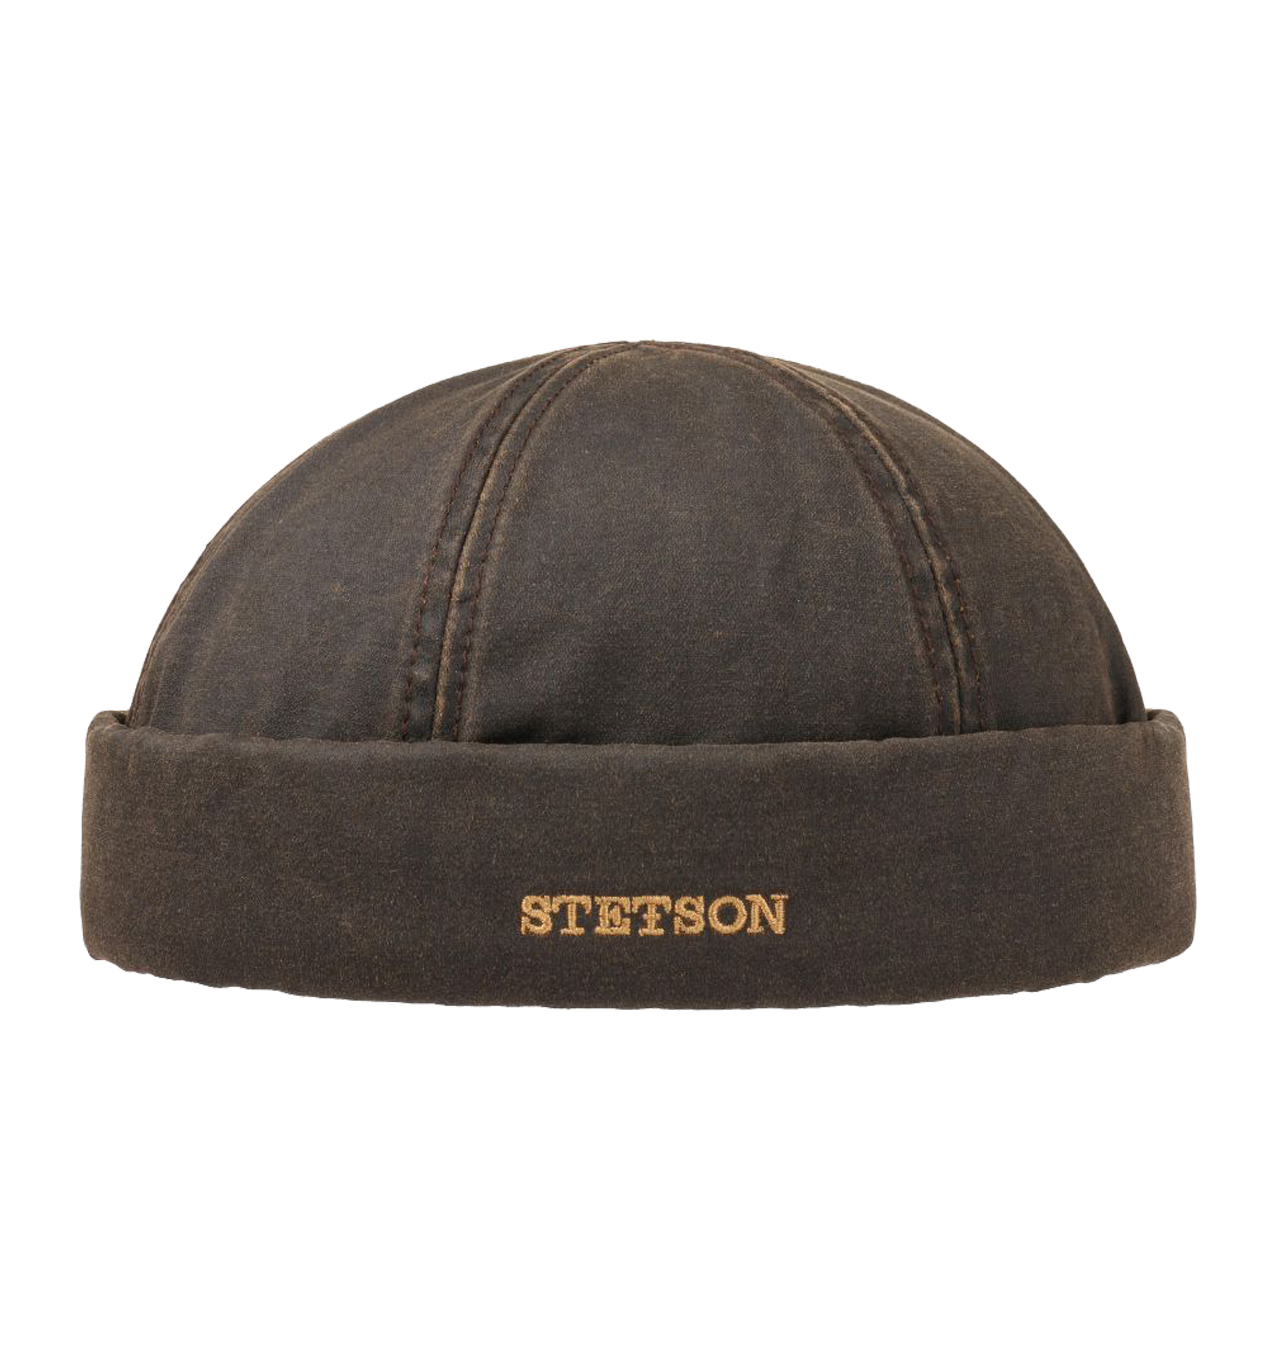 Stetson - Old Cotton Winter Docker Hat - Brown